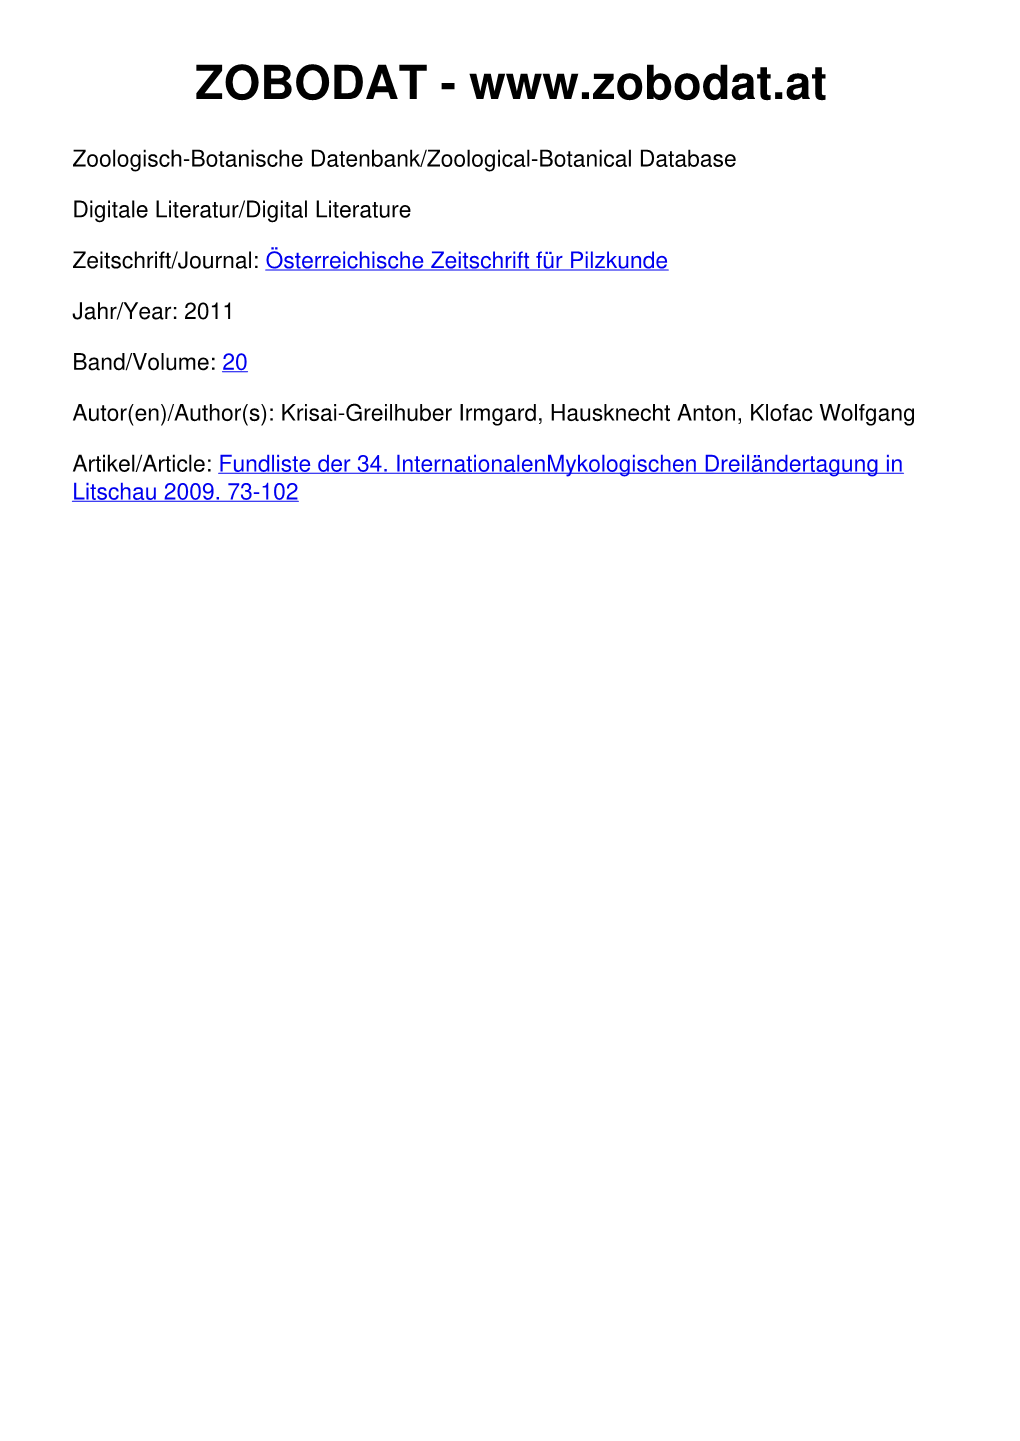 Fundliste Der 34. Internationalenmykologischen Dreiländertagung in Litschau 2009. Irmgard Krisai-Greilhuber, Anton Hausknecht, Wolfgang Klofac